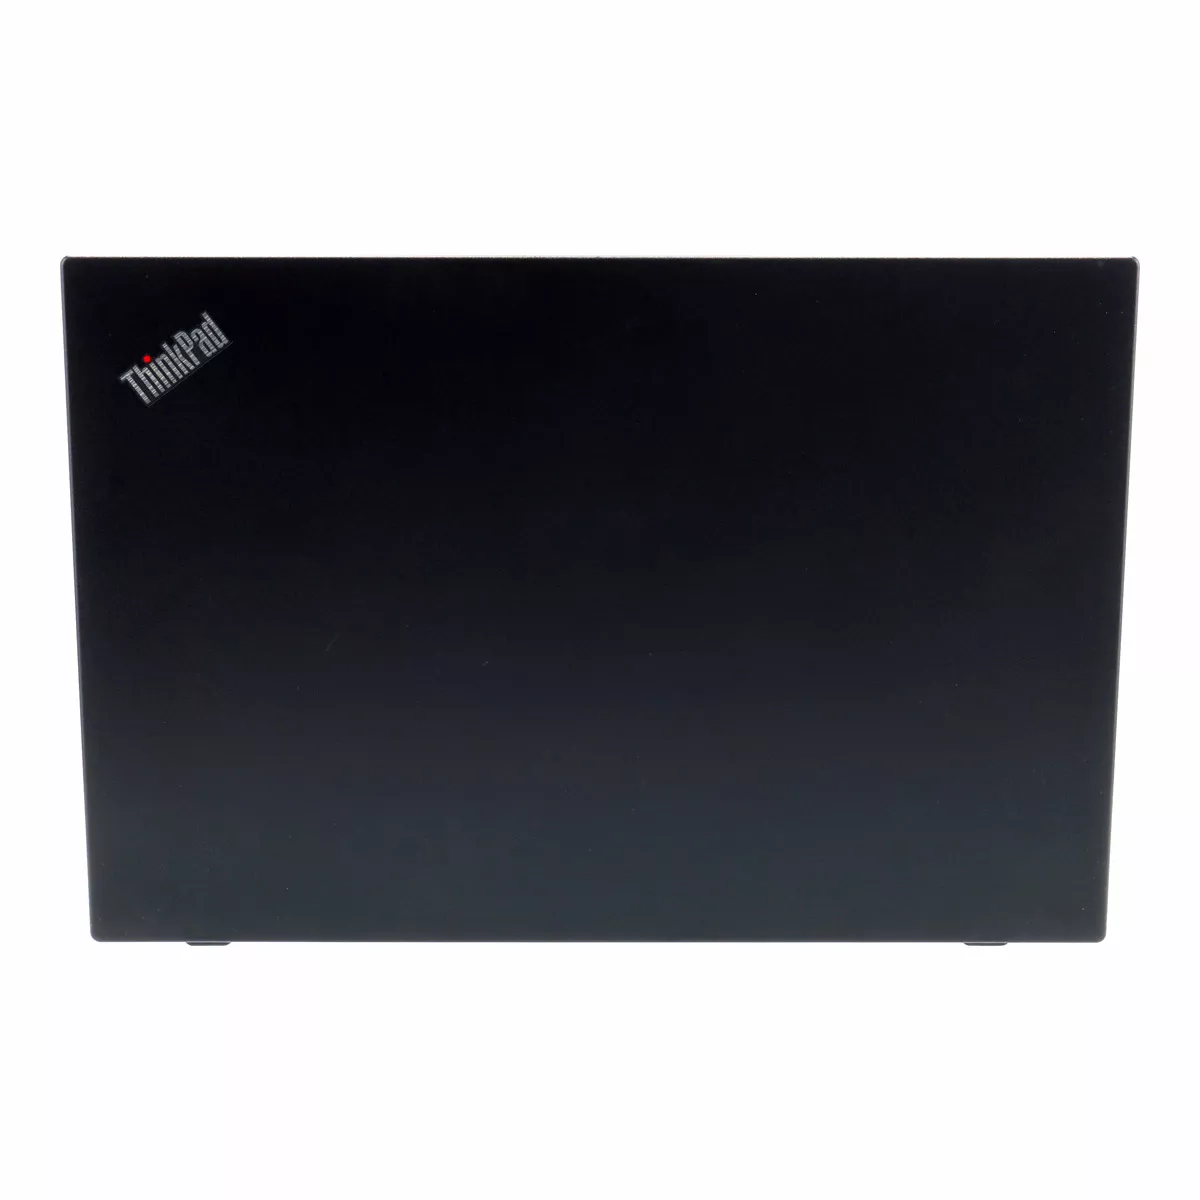 Lenovo ThinkPad L590 Core i5 8365U 8 GB 240 GB M.2 nVME SSD Webcam A